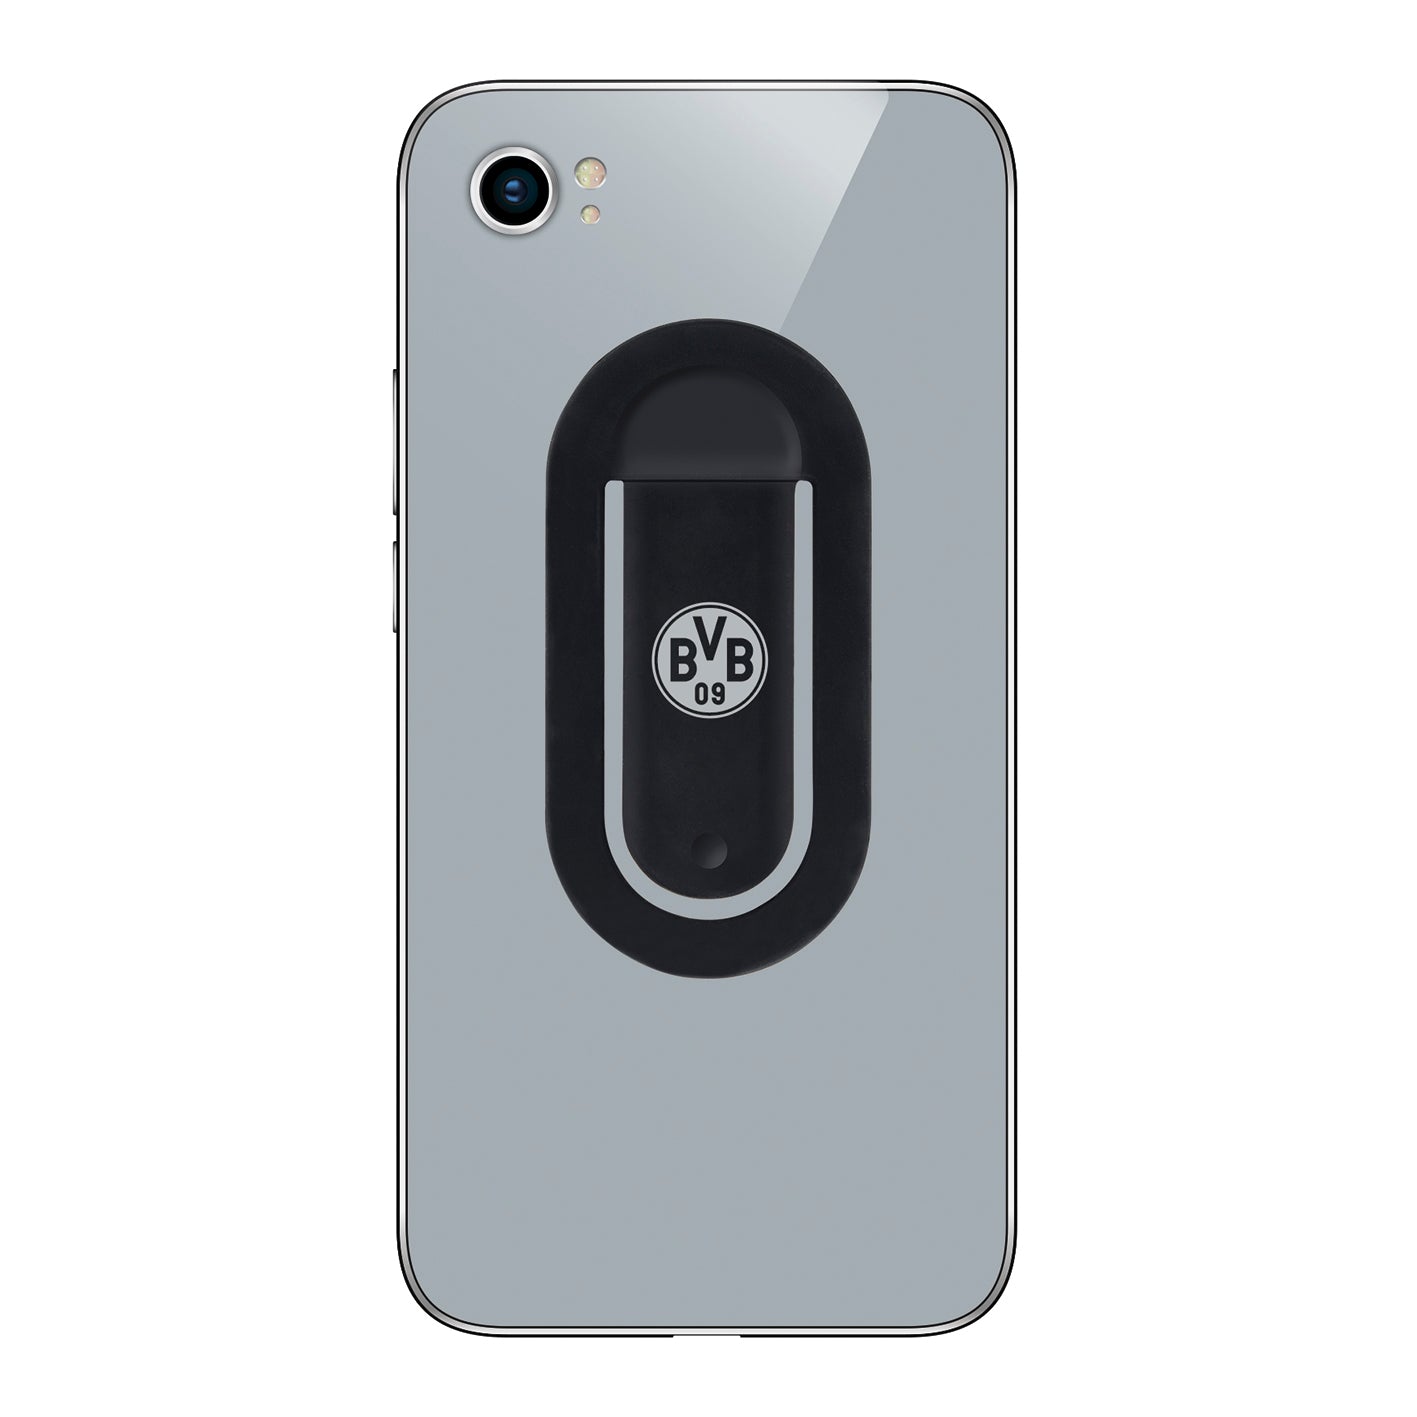 Handyhalterung mit BVB-Logo - Smartphone-Halterung